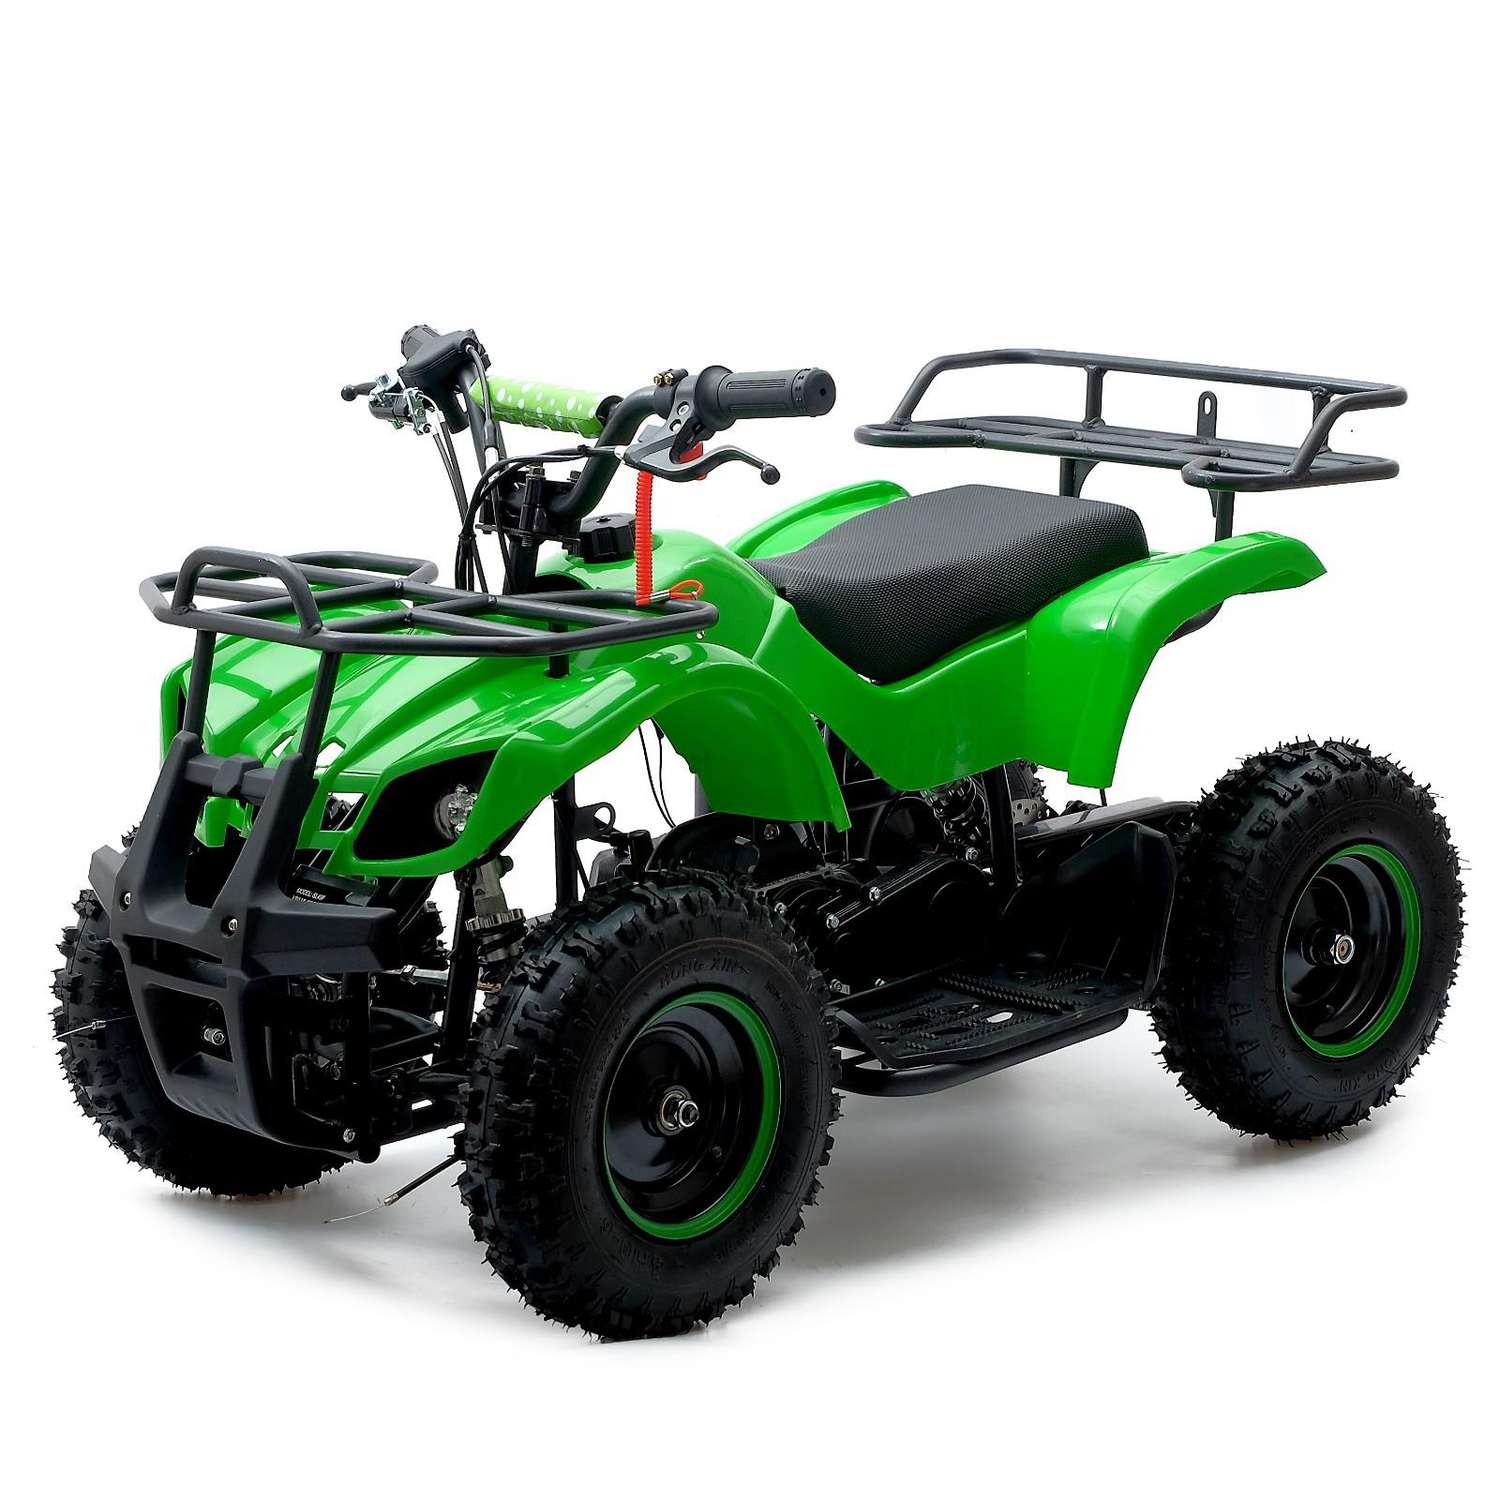 Квадроцикл Sima-Land ATV G6 40 49cc бензиновый цвет зеленый - фото 1